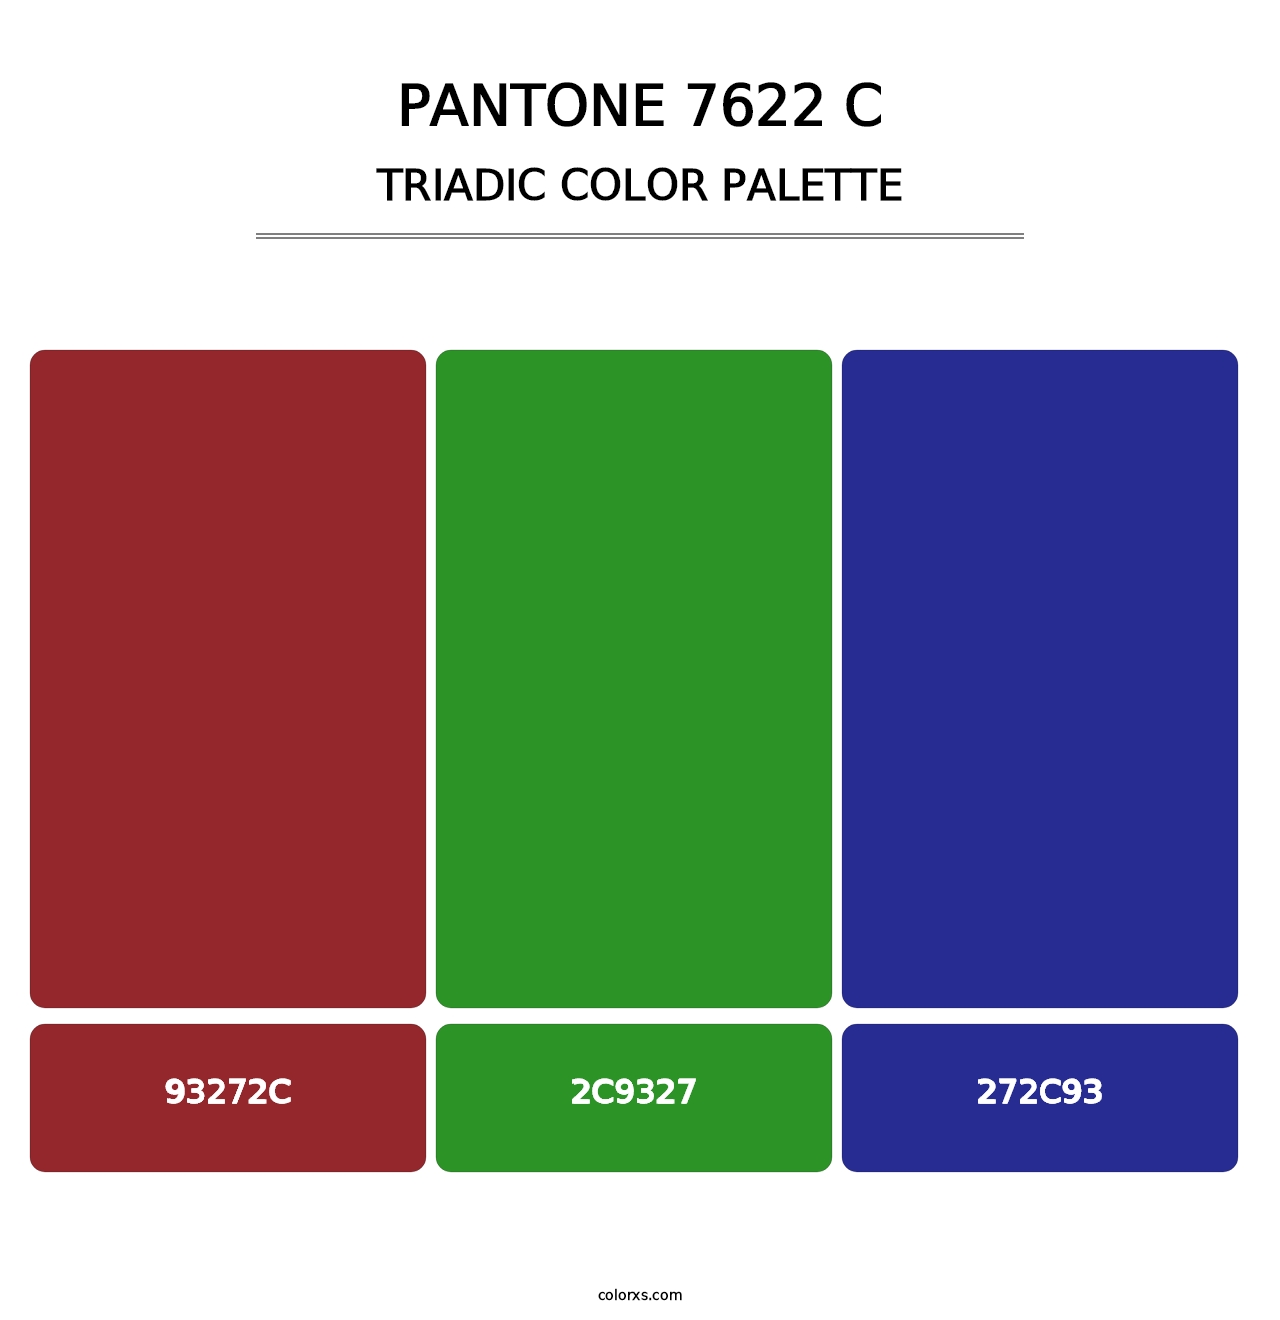 PANTONE 7622 C - Triadic Color Palette